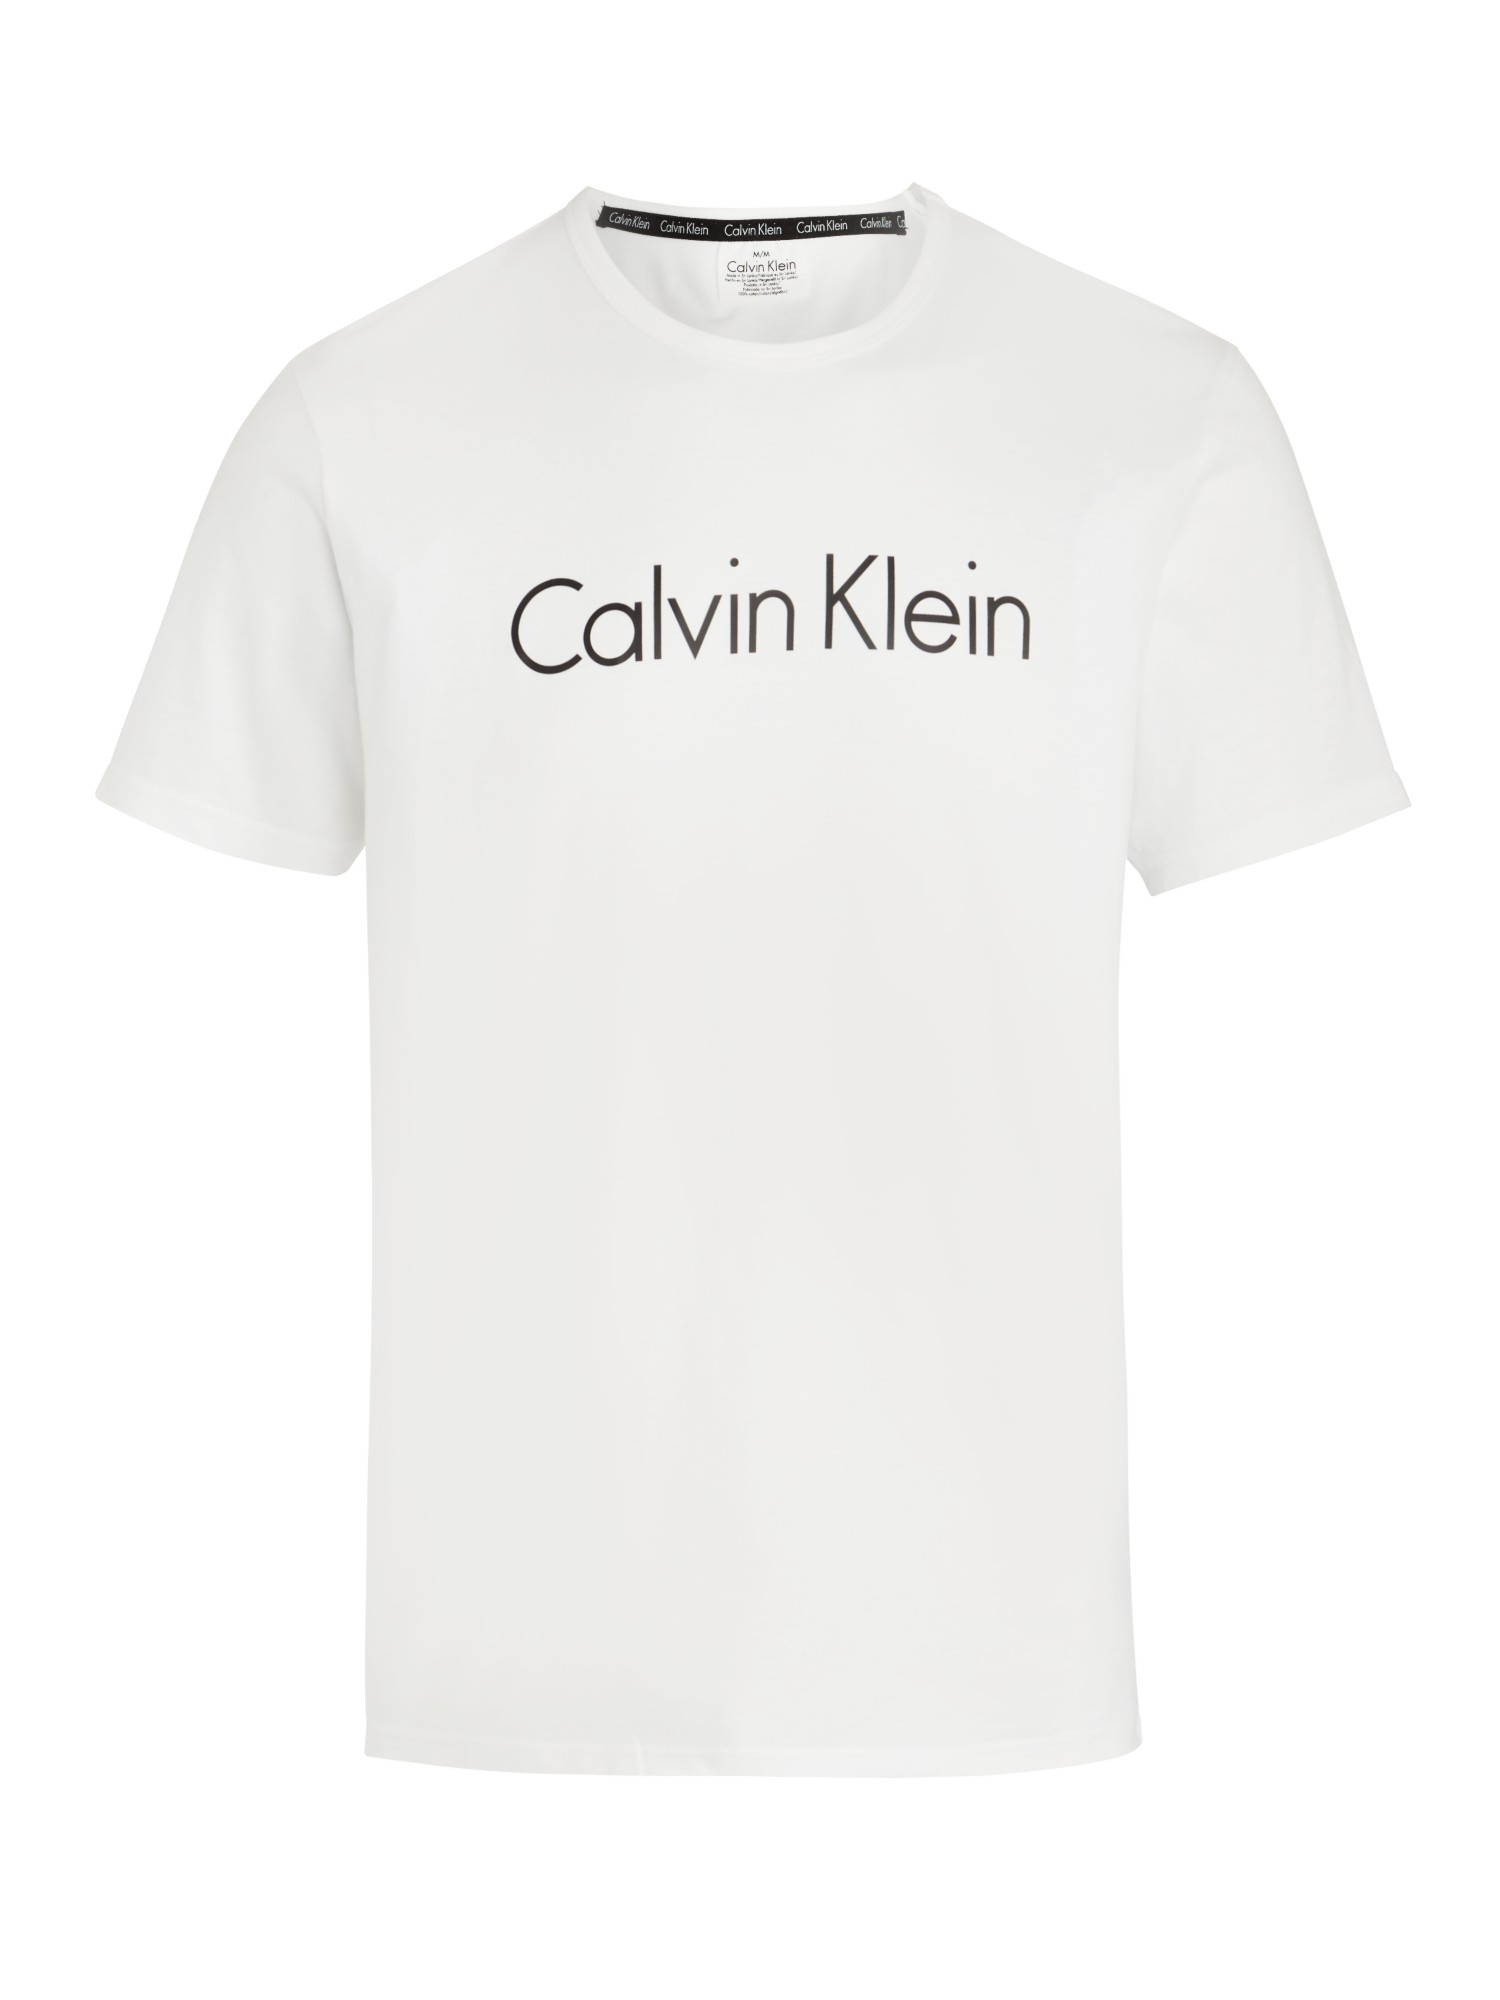 Calvin klein white, Tshirt logo, Mens tshirts